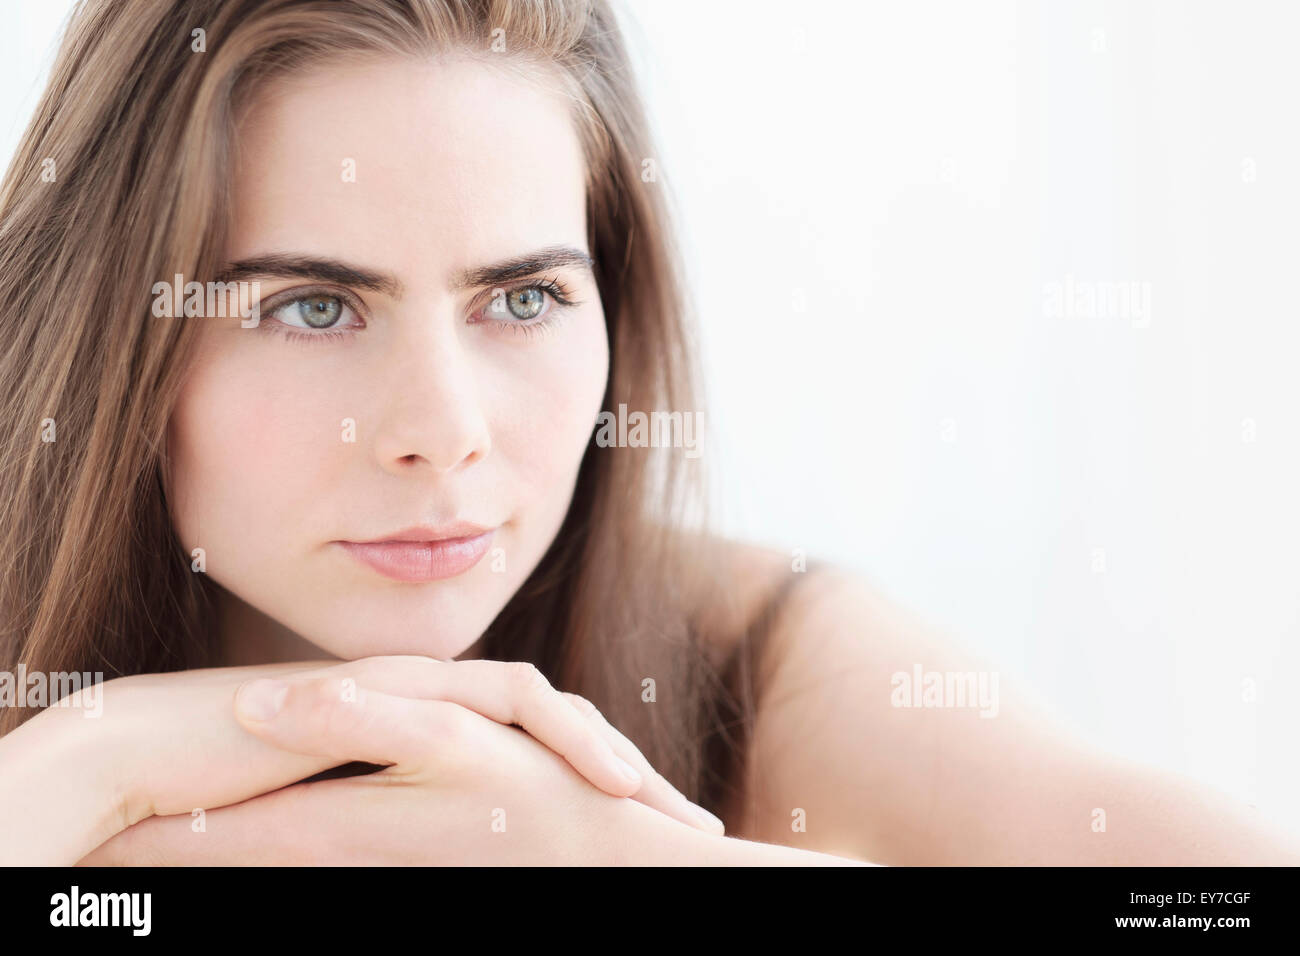 Porträt der jungen Frau mit blauen Augen Stockfoto